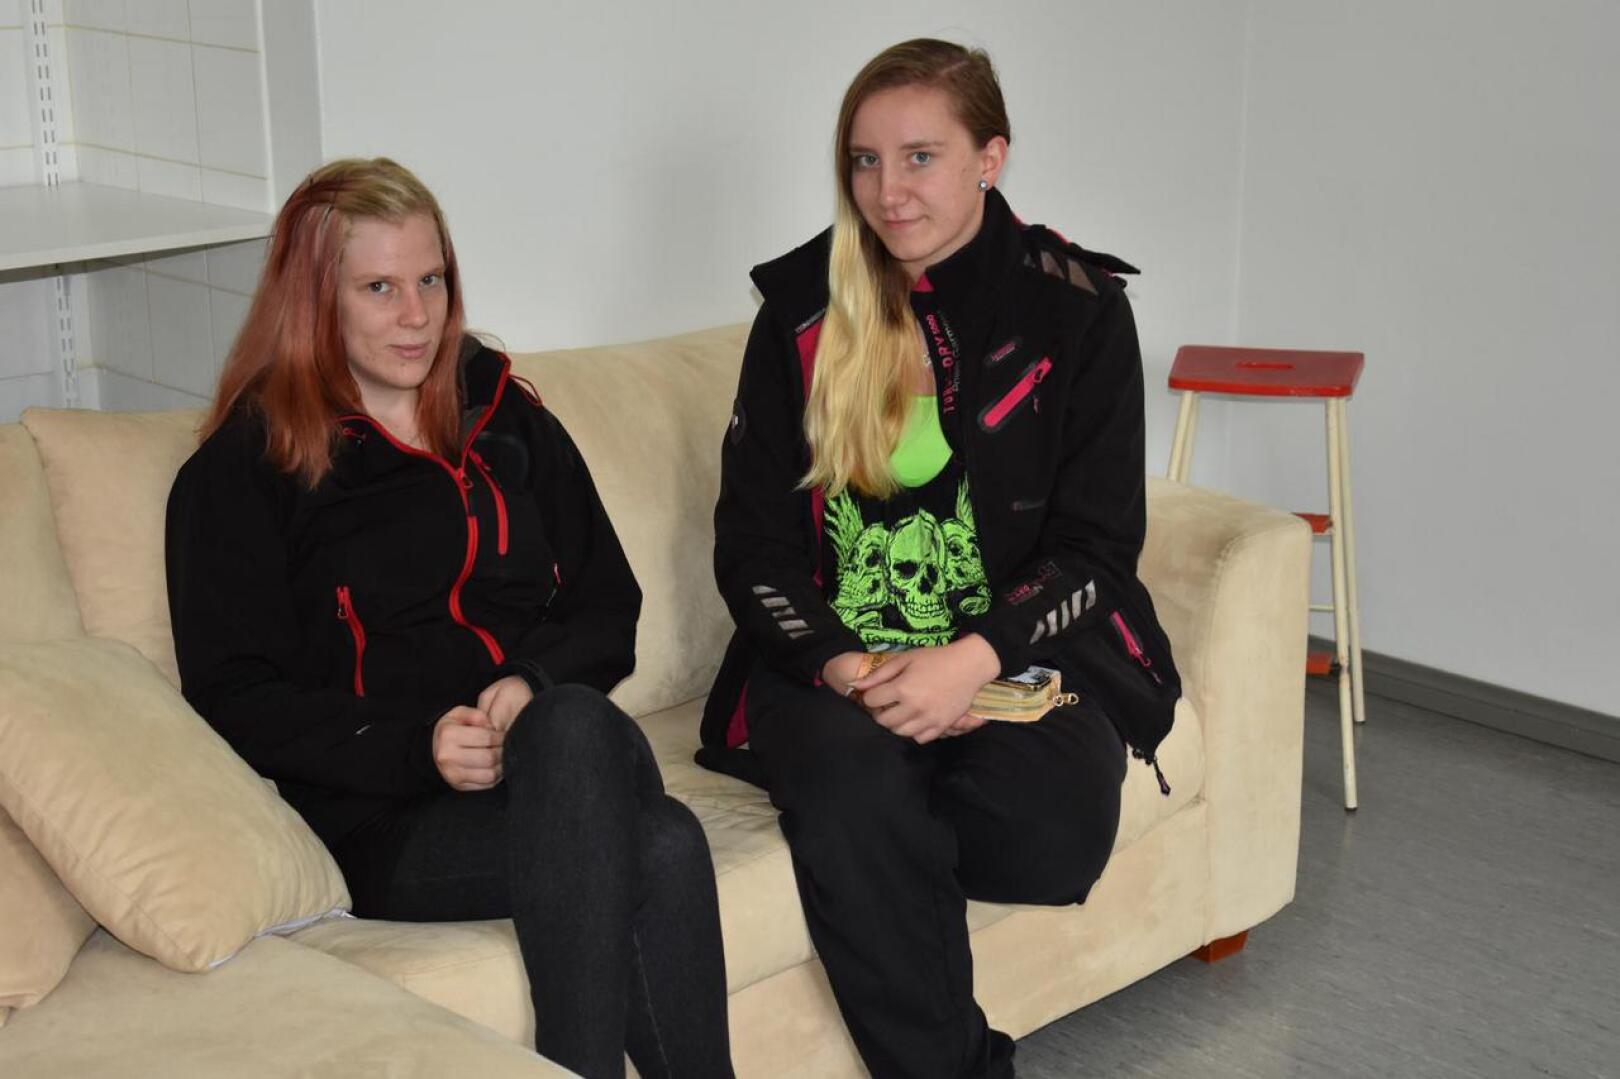 Kannuslaiset Taru Malinen (vasemmalla) ja Janita Kaarto kertoivat ajatuksiaan Kannuksesta nuoren näkökulmasta.